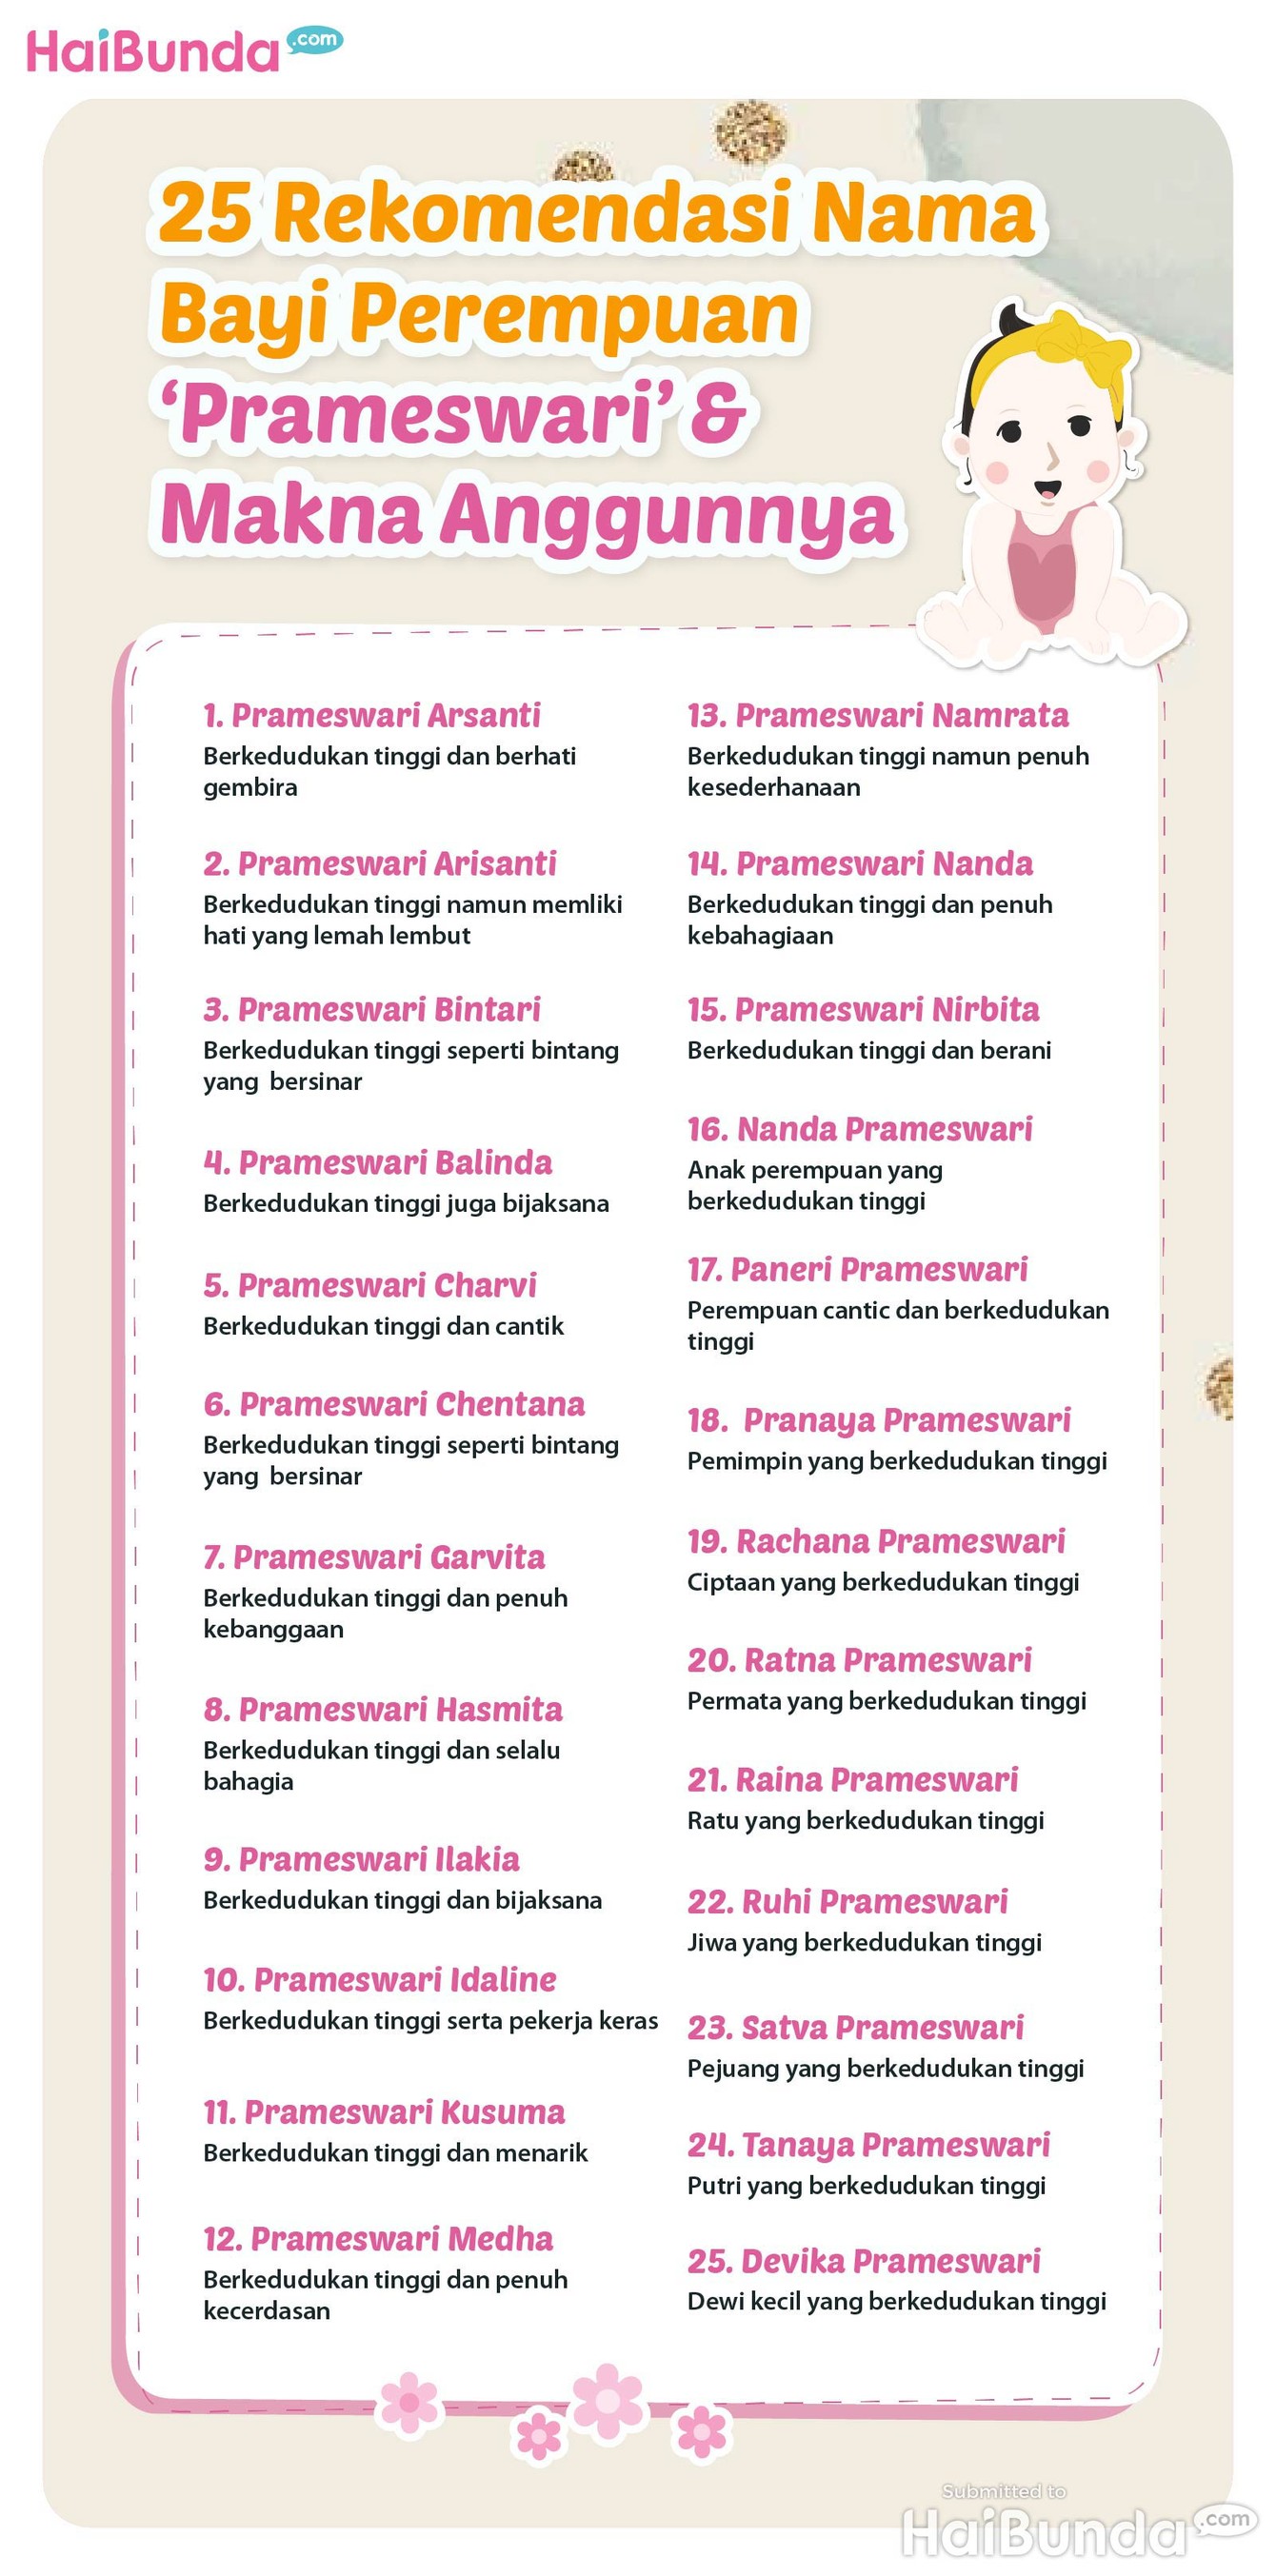 25 Rekomendasi Nama Bayi Perempuan 'Prameswari' & Makna Anggunnya